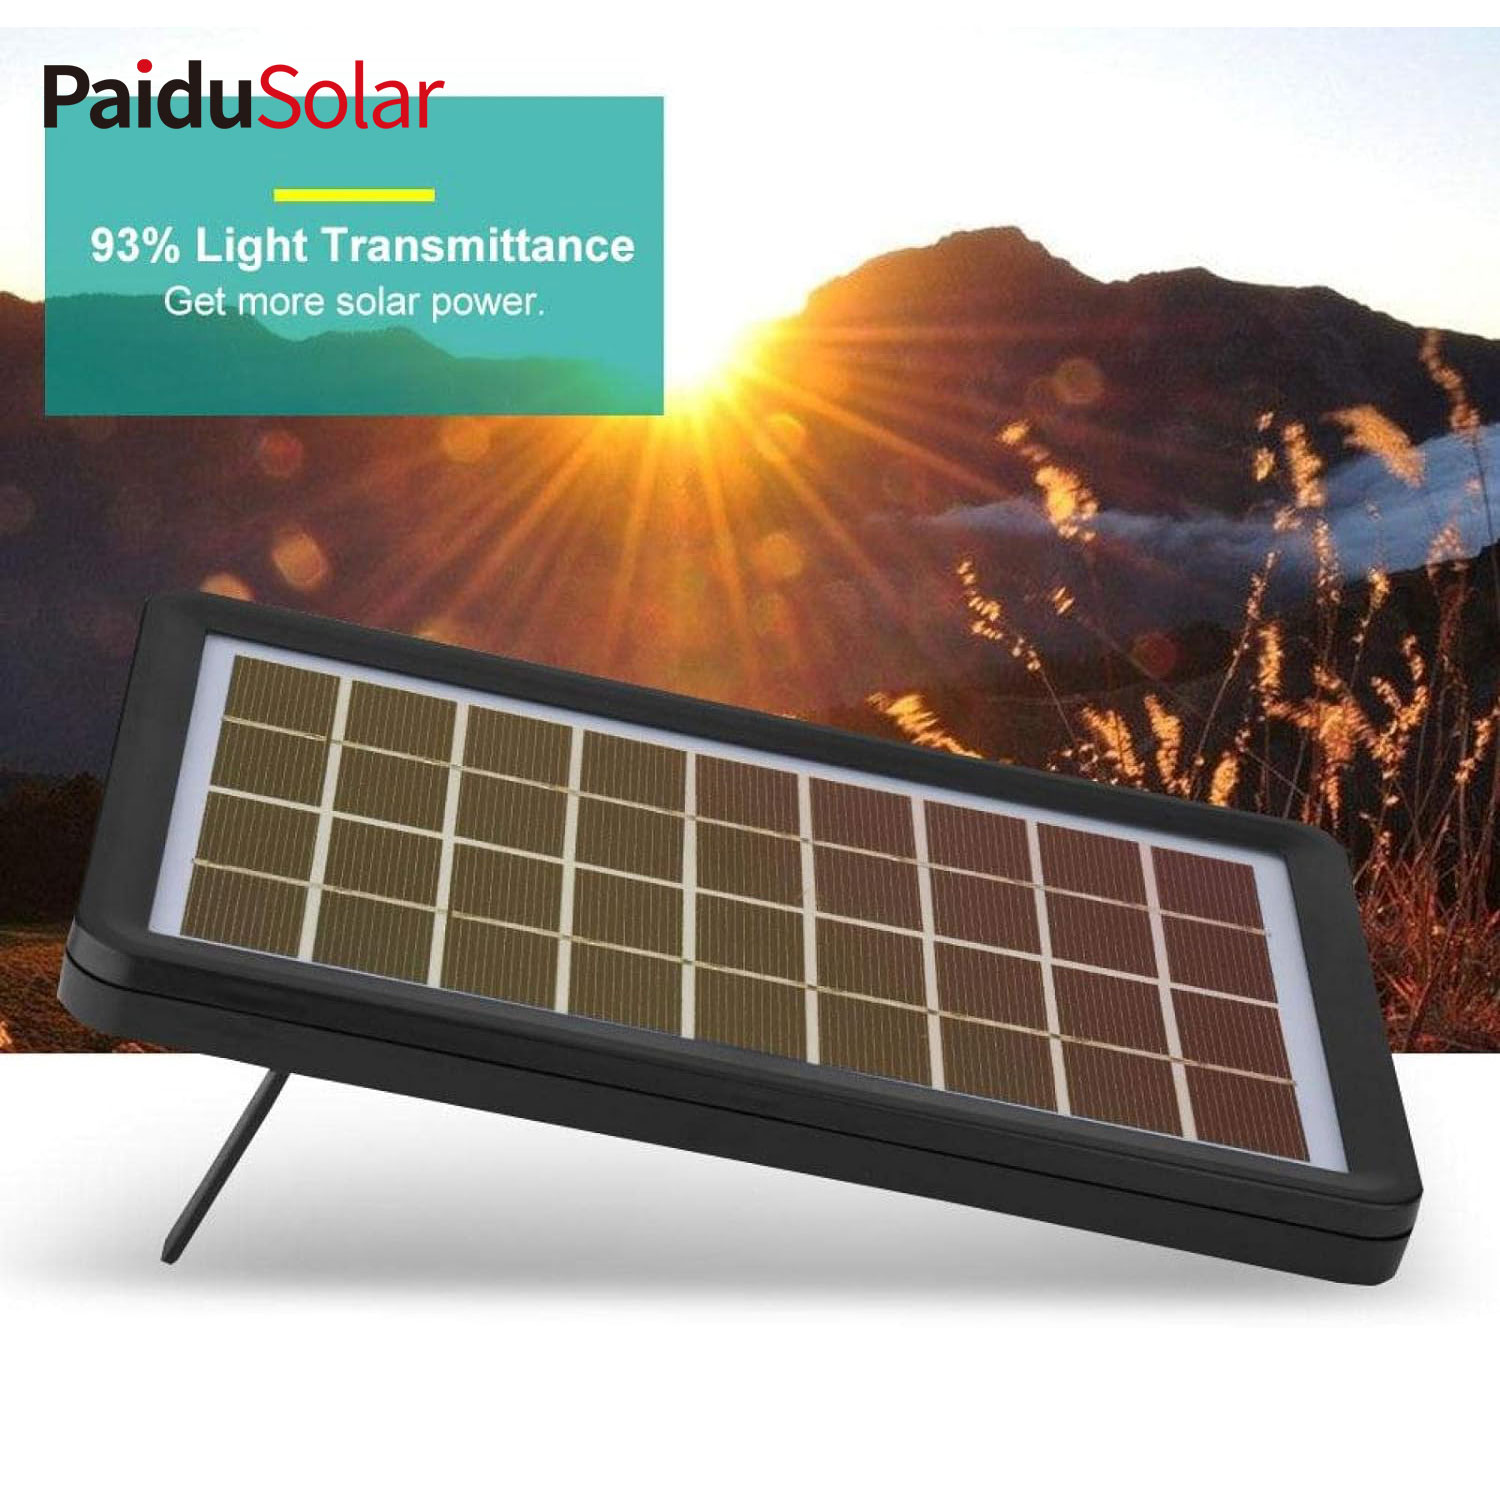 PaiduSolar 9V 3W Poly Silicon Panel Solari Ċellula Solari Għall-Iċċarġjar tal-batterija Boat_9mh7